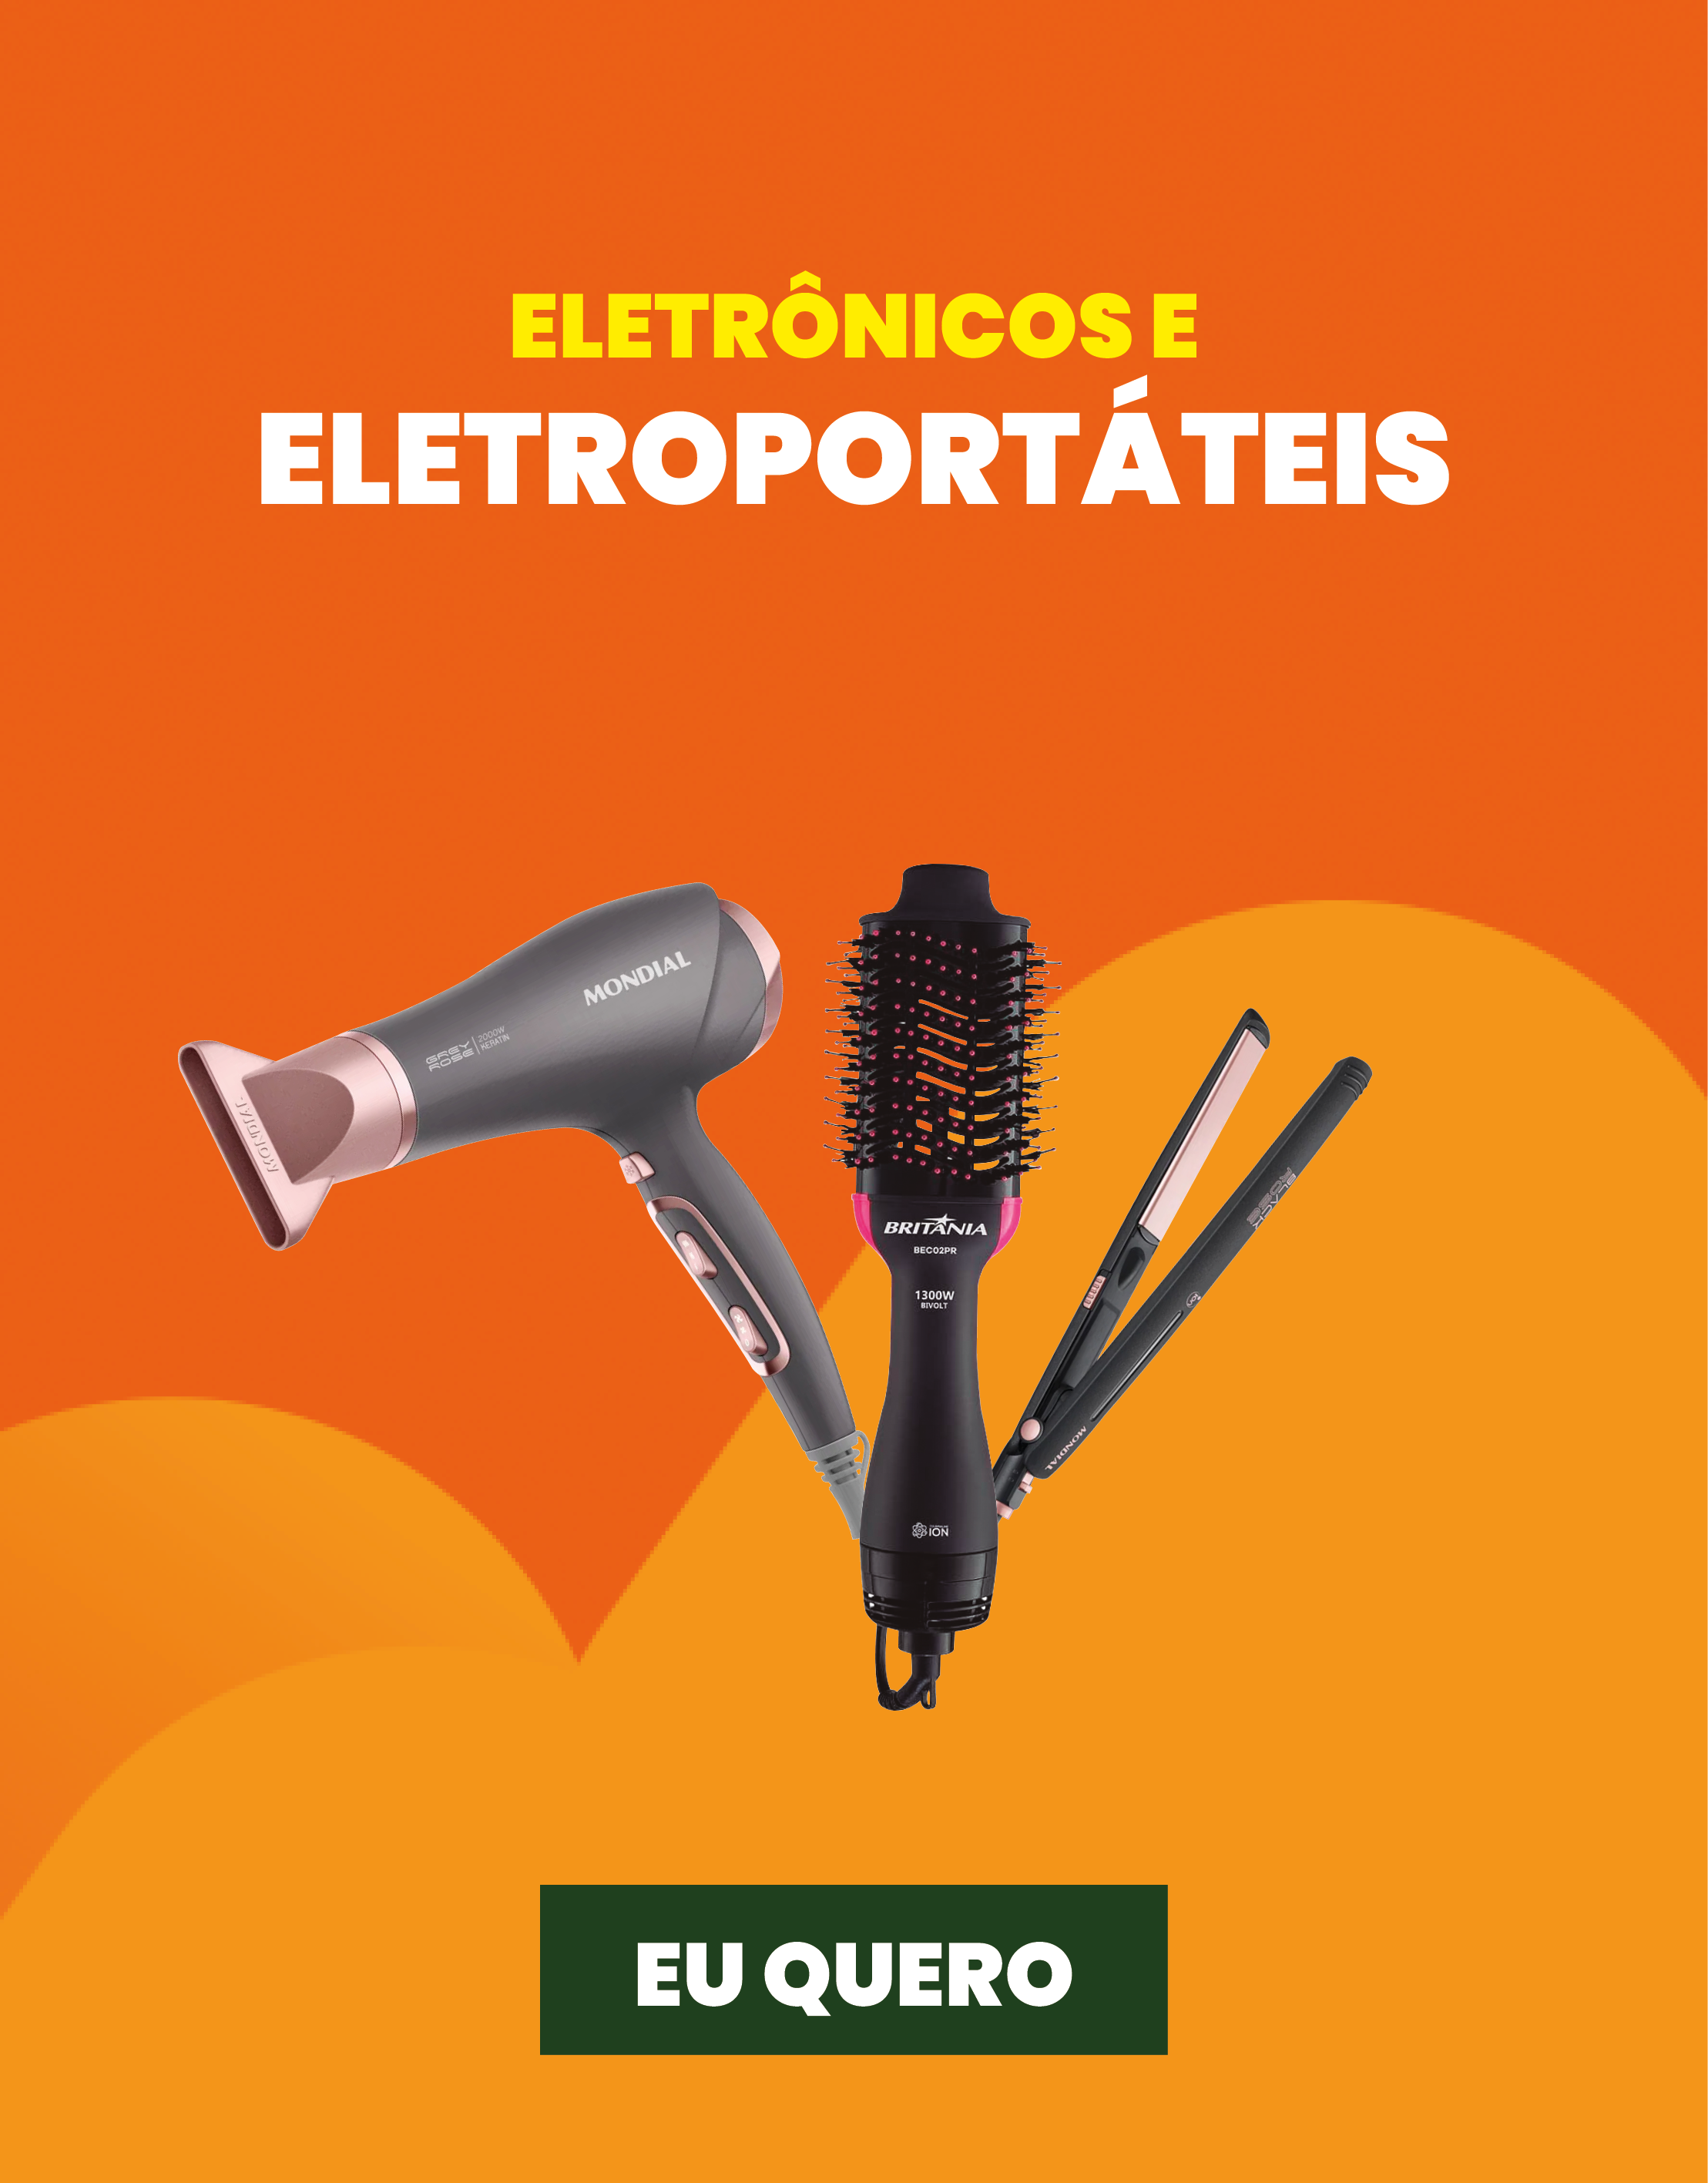  eletronicos-e-eletroportateis